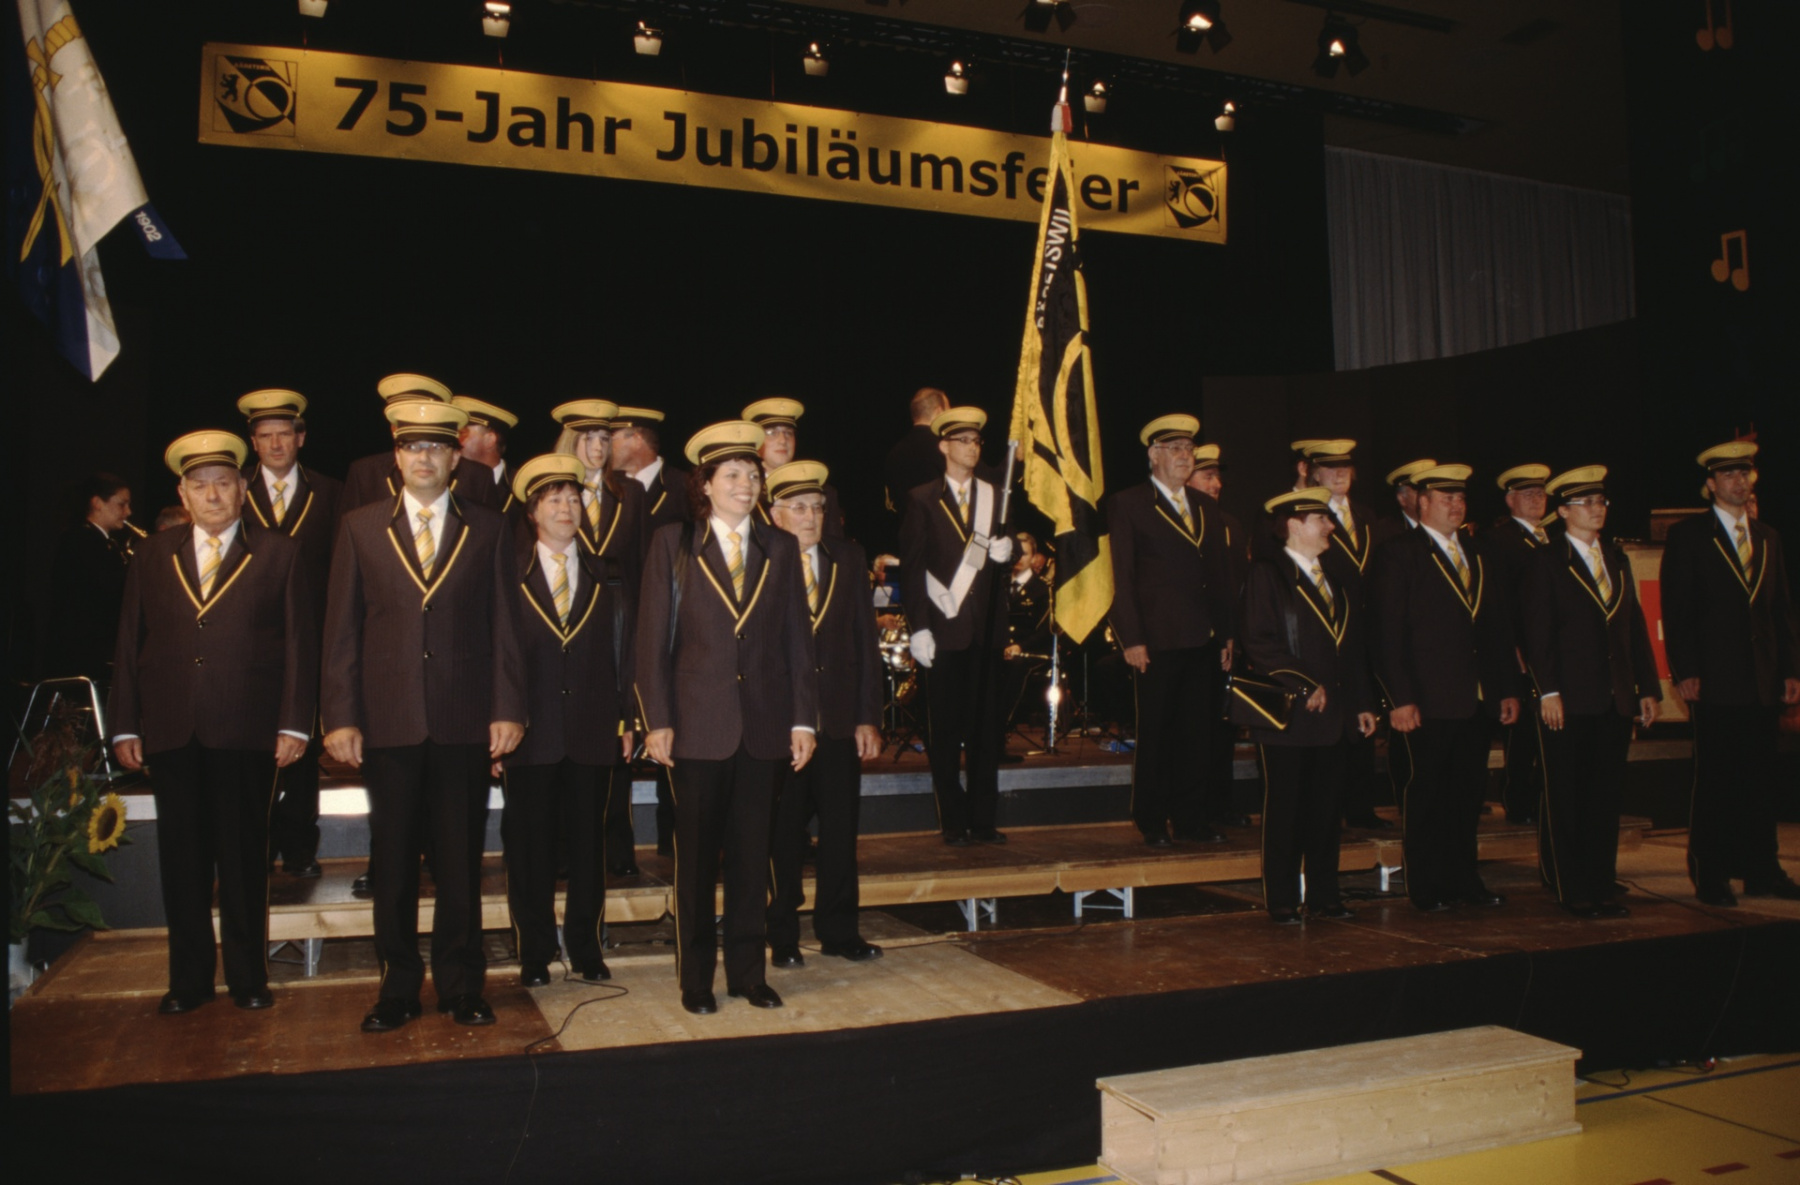 Uniformweihe 75 Jahre Jubiläum, MZH, Einmarsch mit der alten Uniform